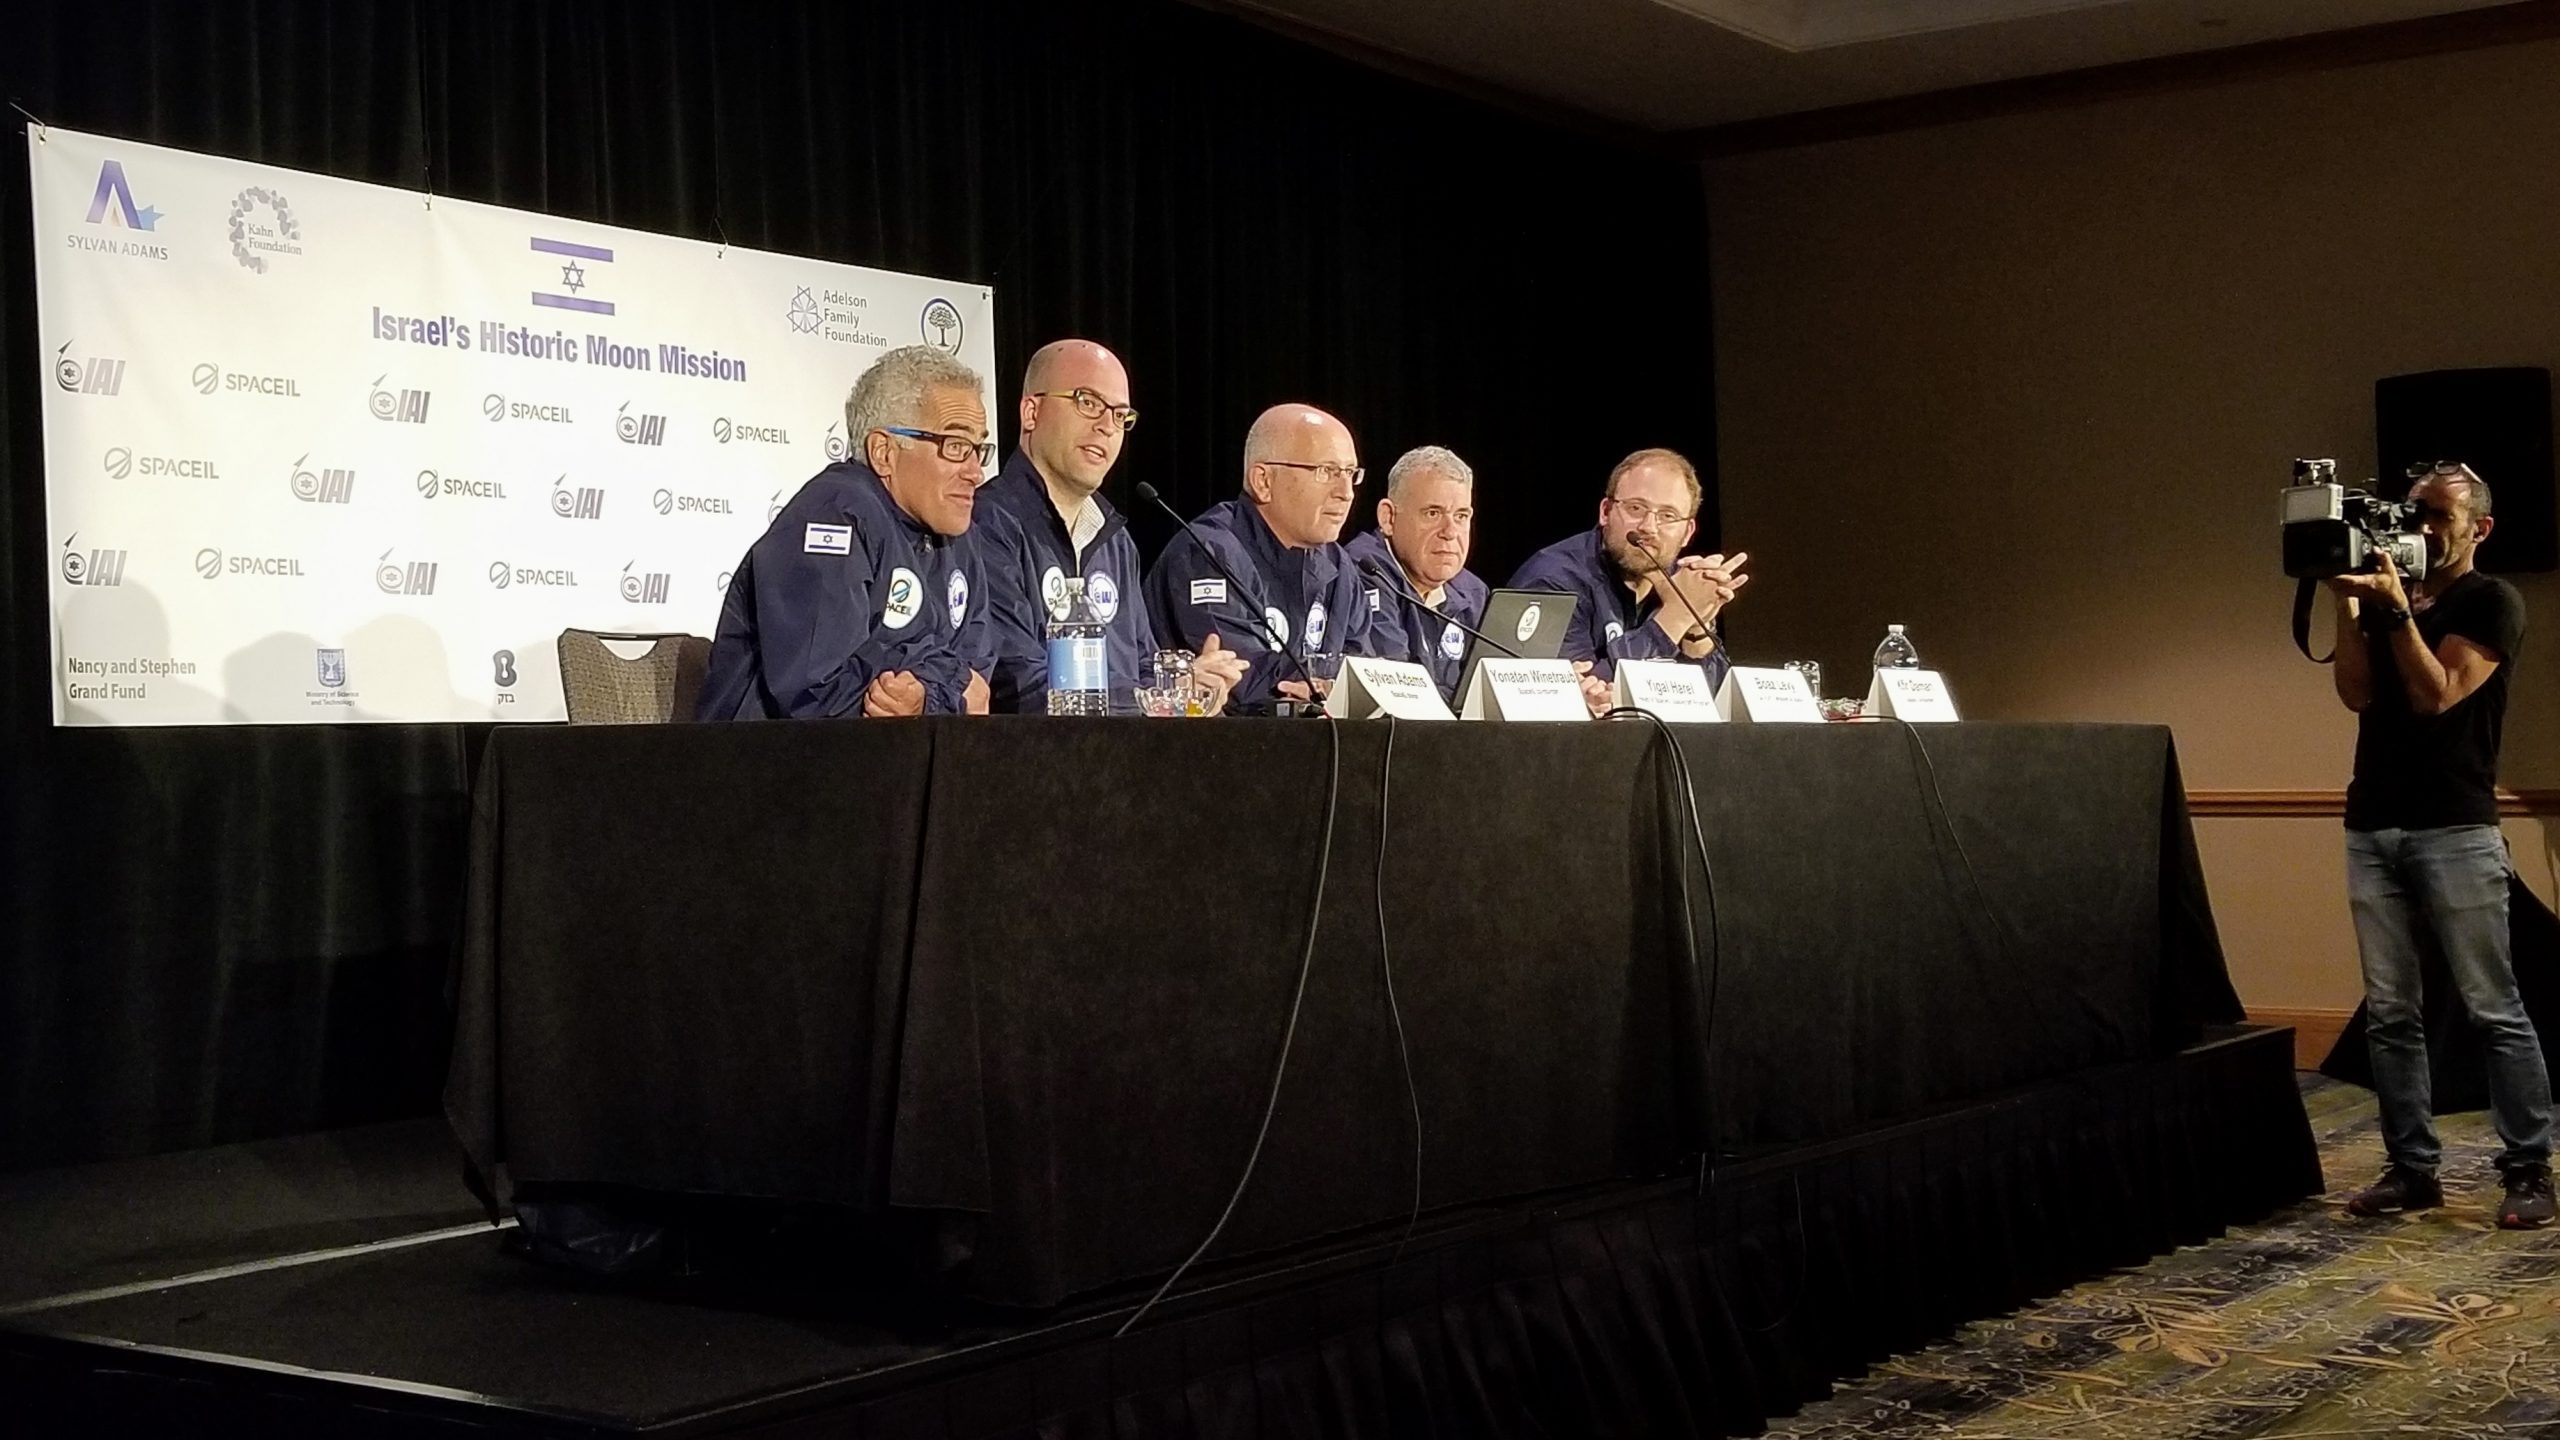 يتحدث المسؤولون في شركة SpaceIL و Israel Aerospace Industries في مؤتمر صحفي في أورلاندو، فلوريدا، في 20 فبراير 2019 [المصدر:Space.com]